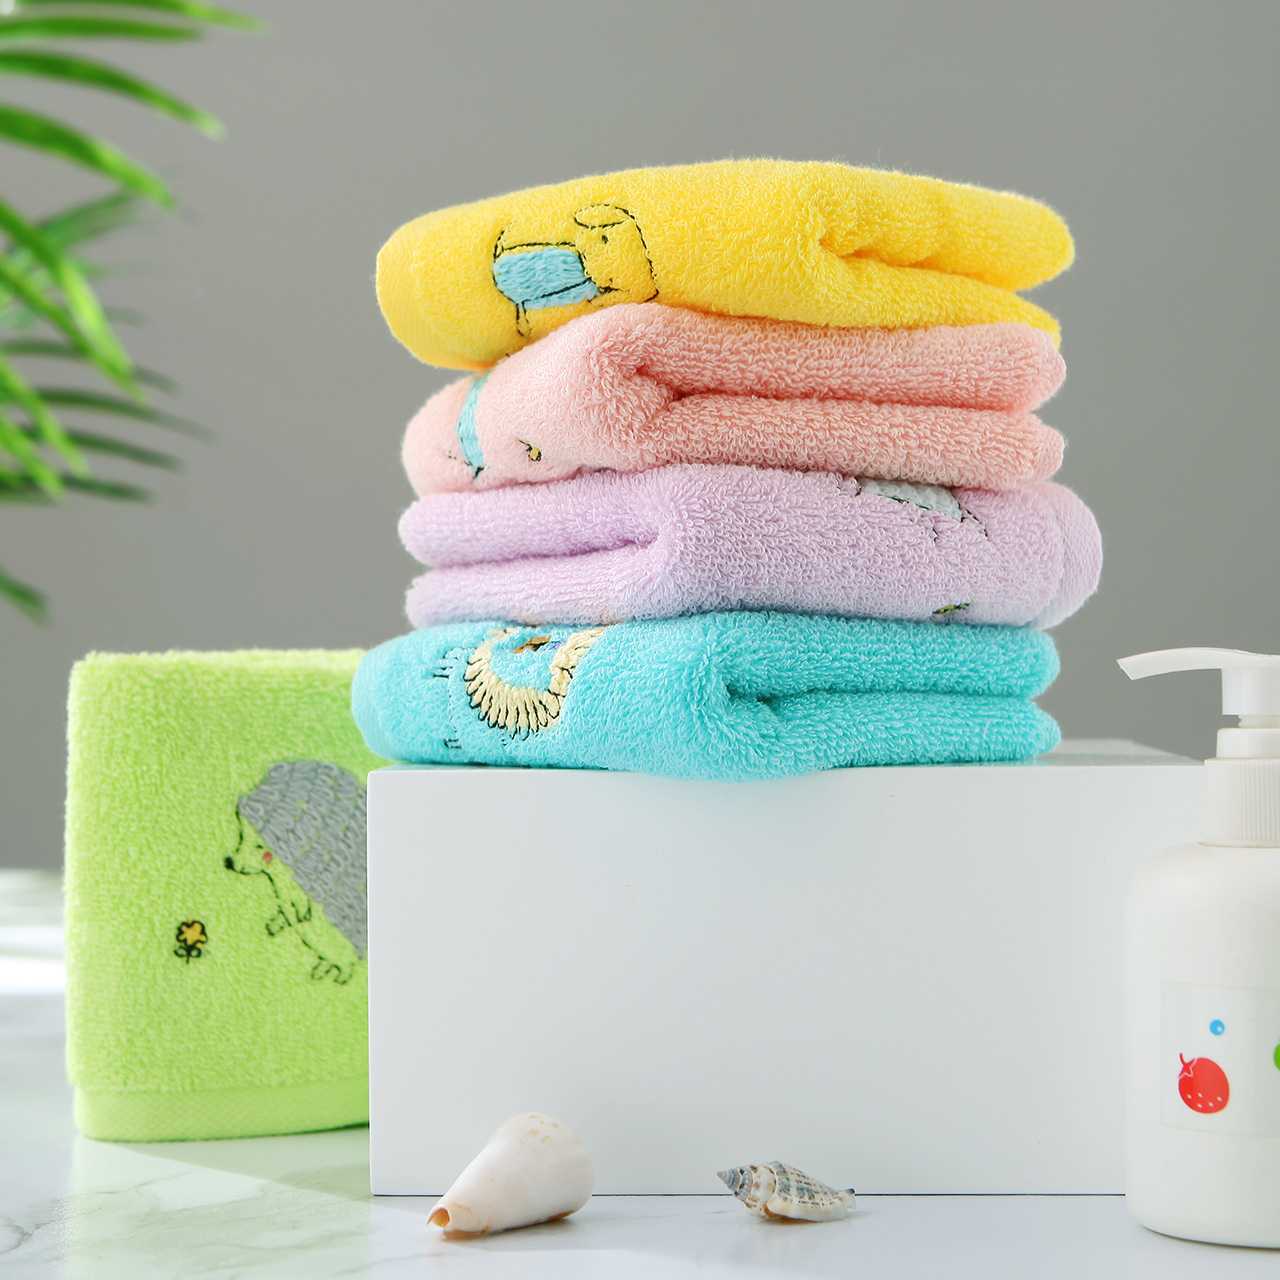 Как стирать полотенца, чтобы они оставались мягкими и яркими